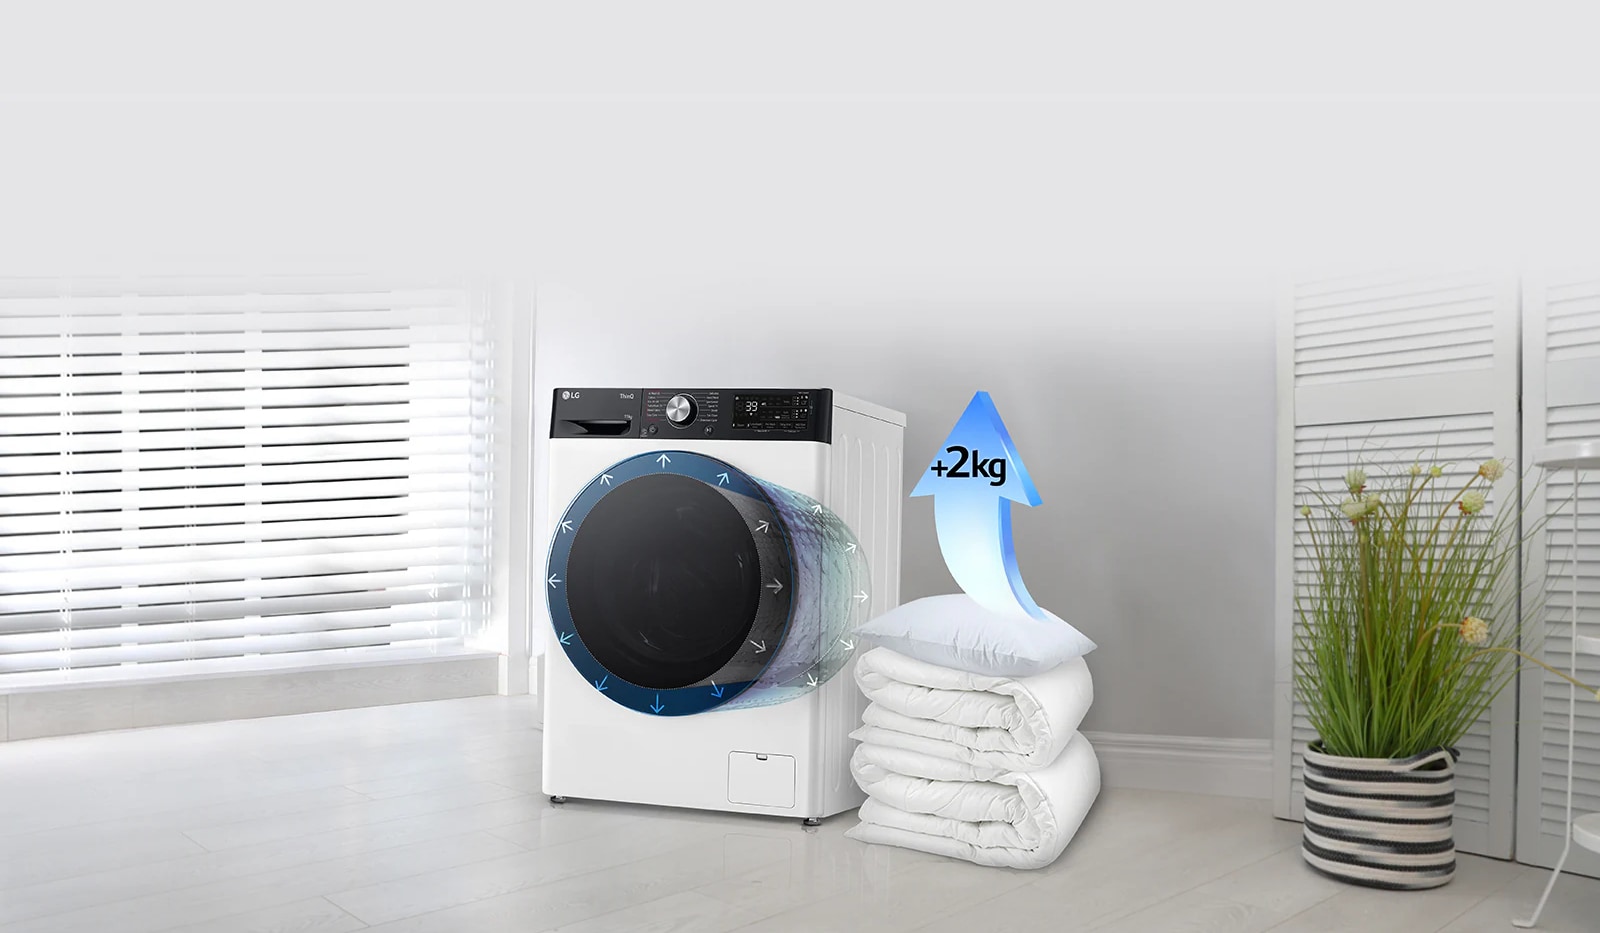 Păturile și pernele sunt lângă mașina de spălat, iar există o săgeată care indică o creștere de 2 kg pe pernă.